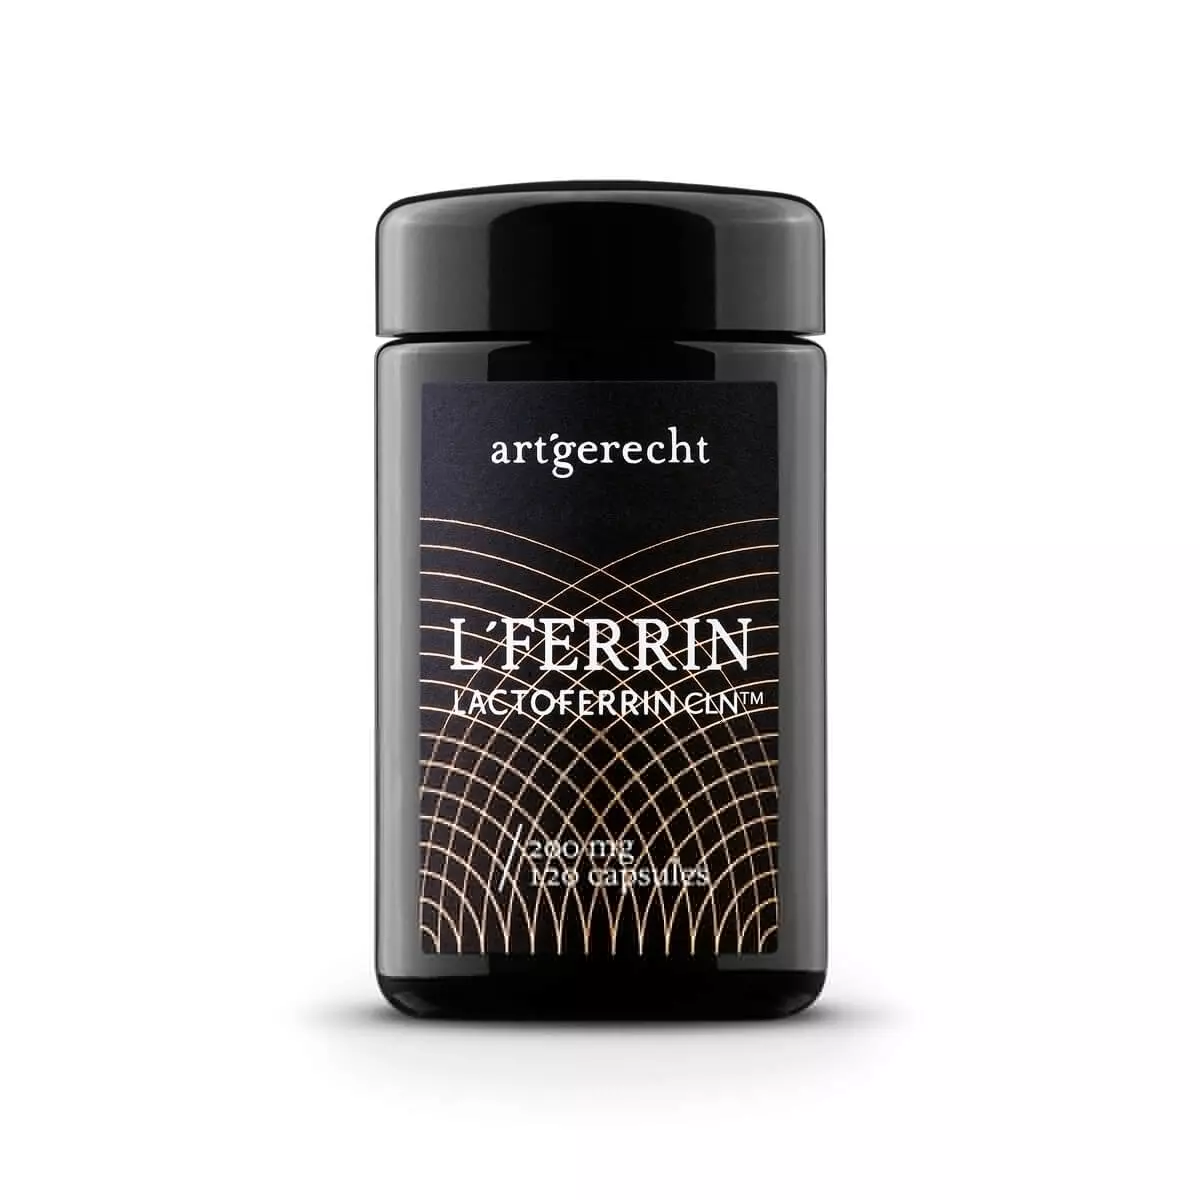 L'FERRIN - Lattoferrina CLN (pulita)